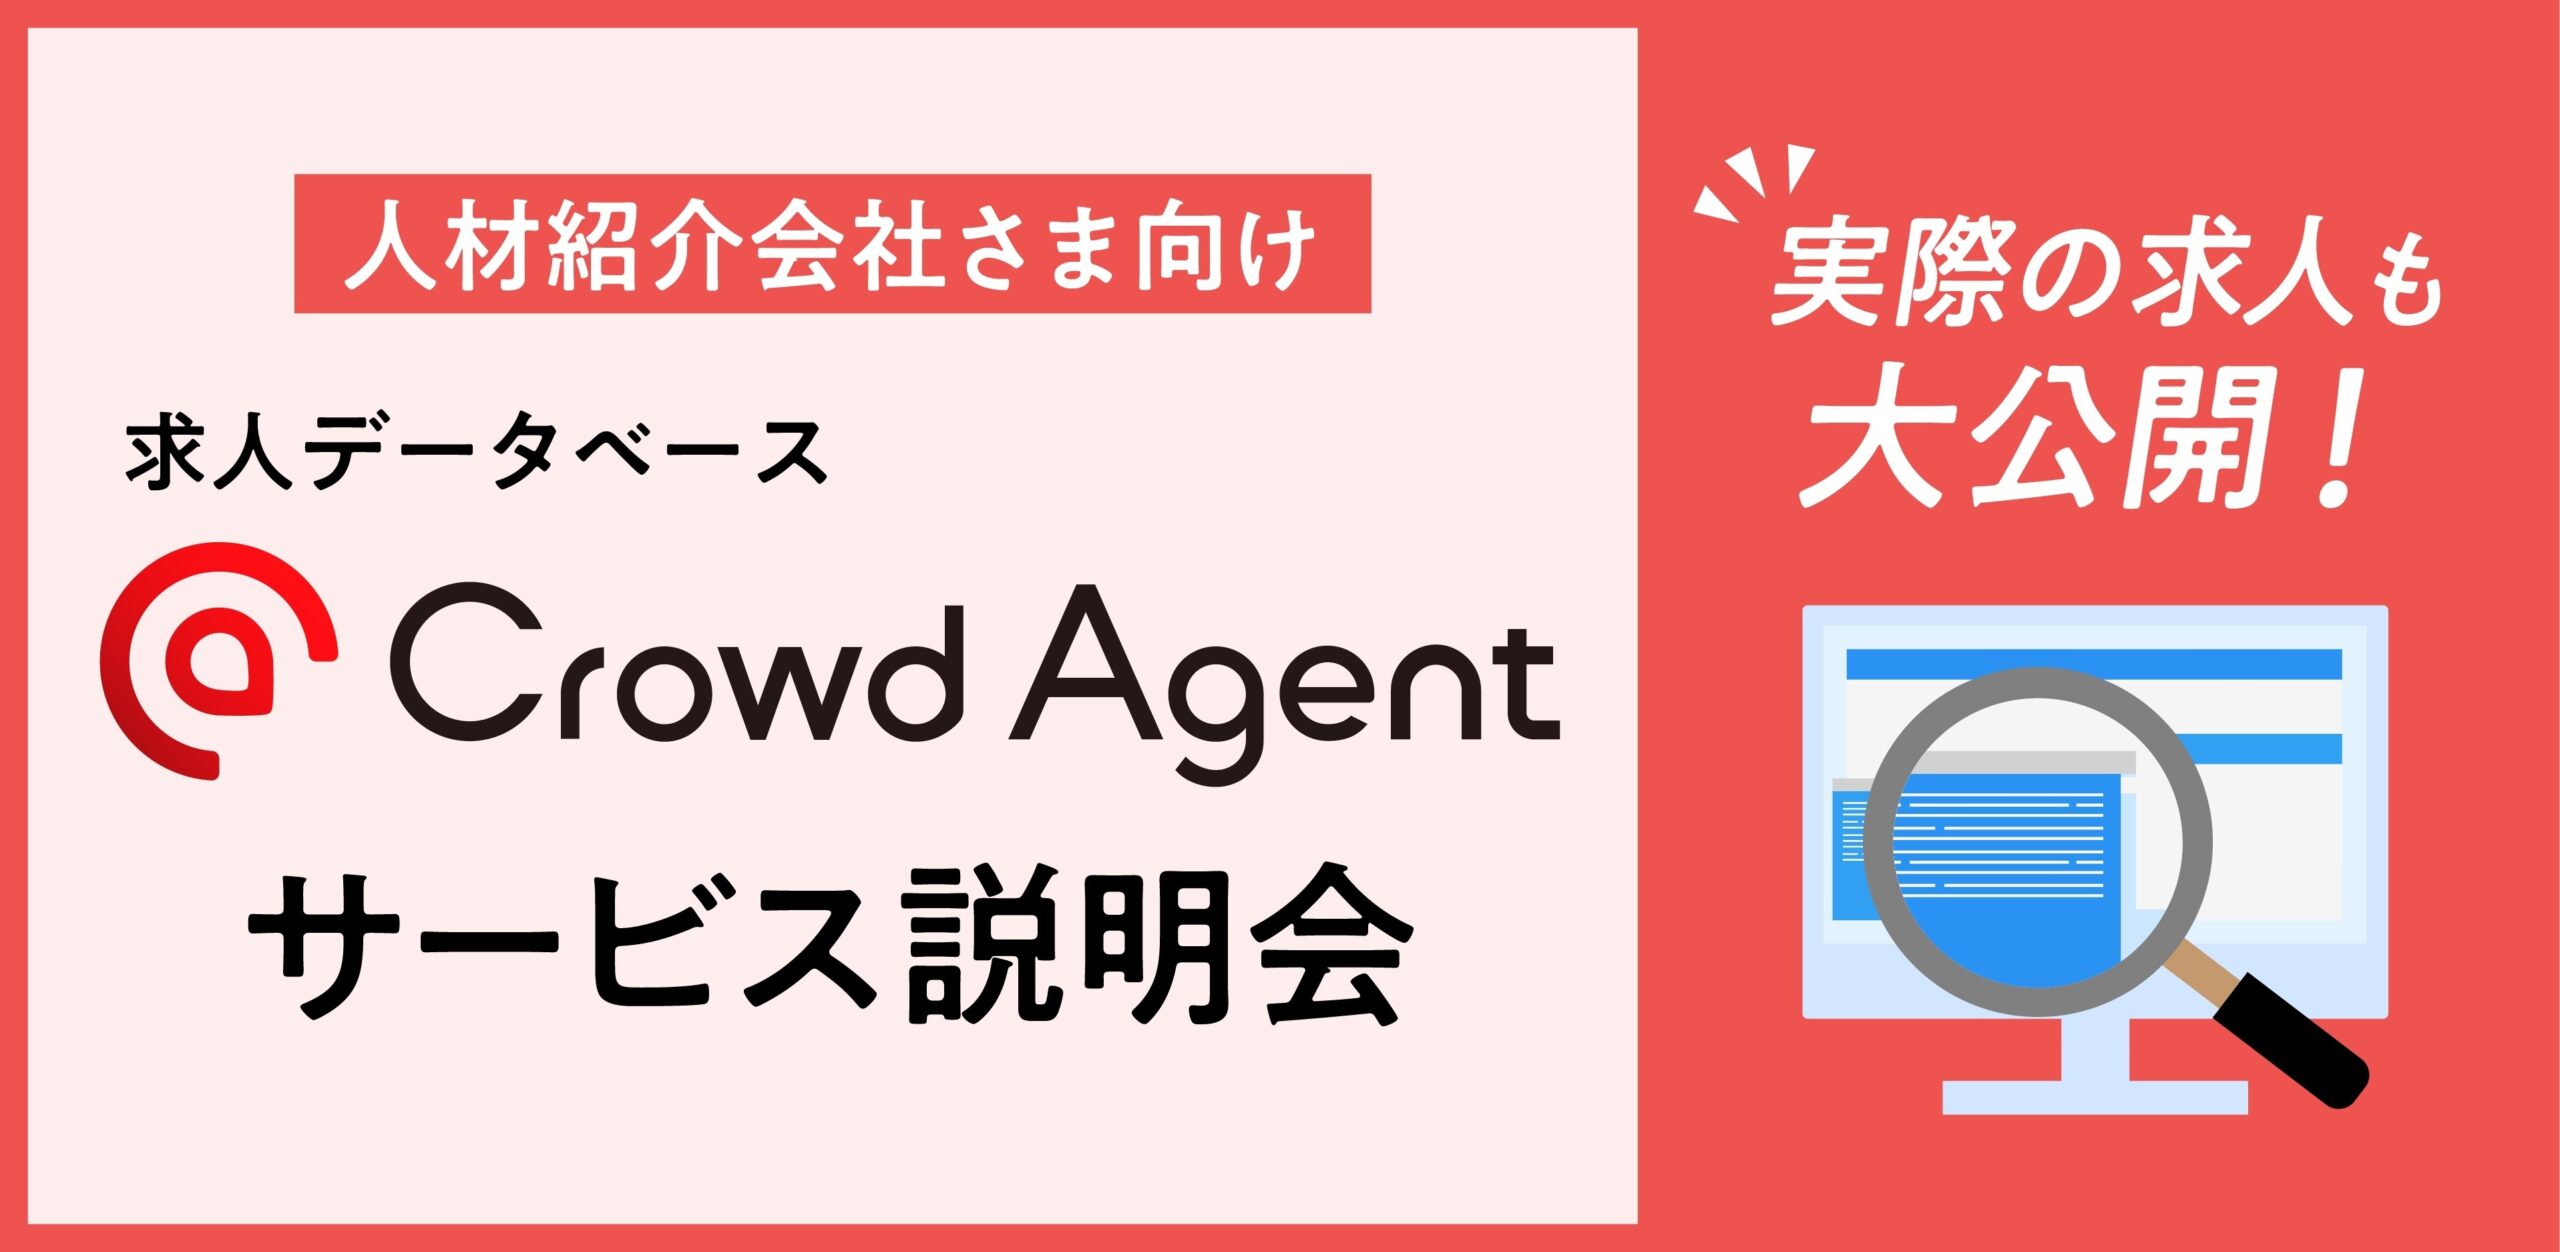 求人データベース <br>Crowd Agent【サービス紹介】